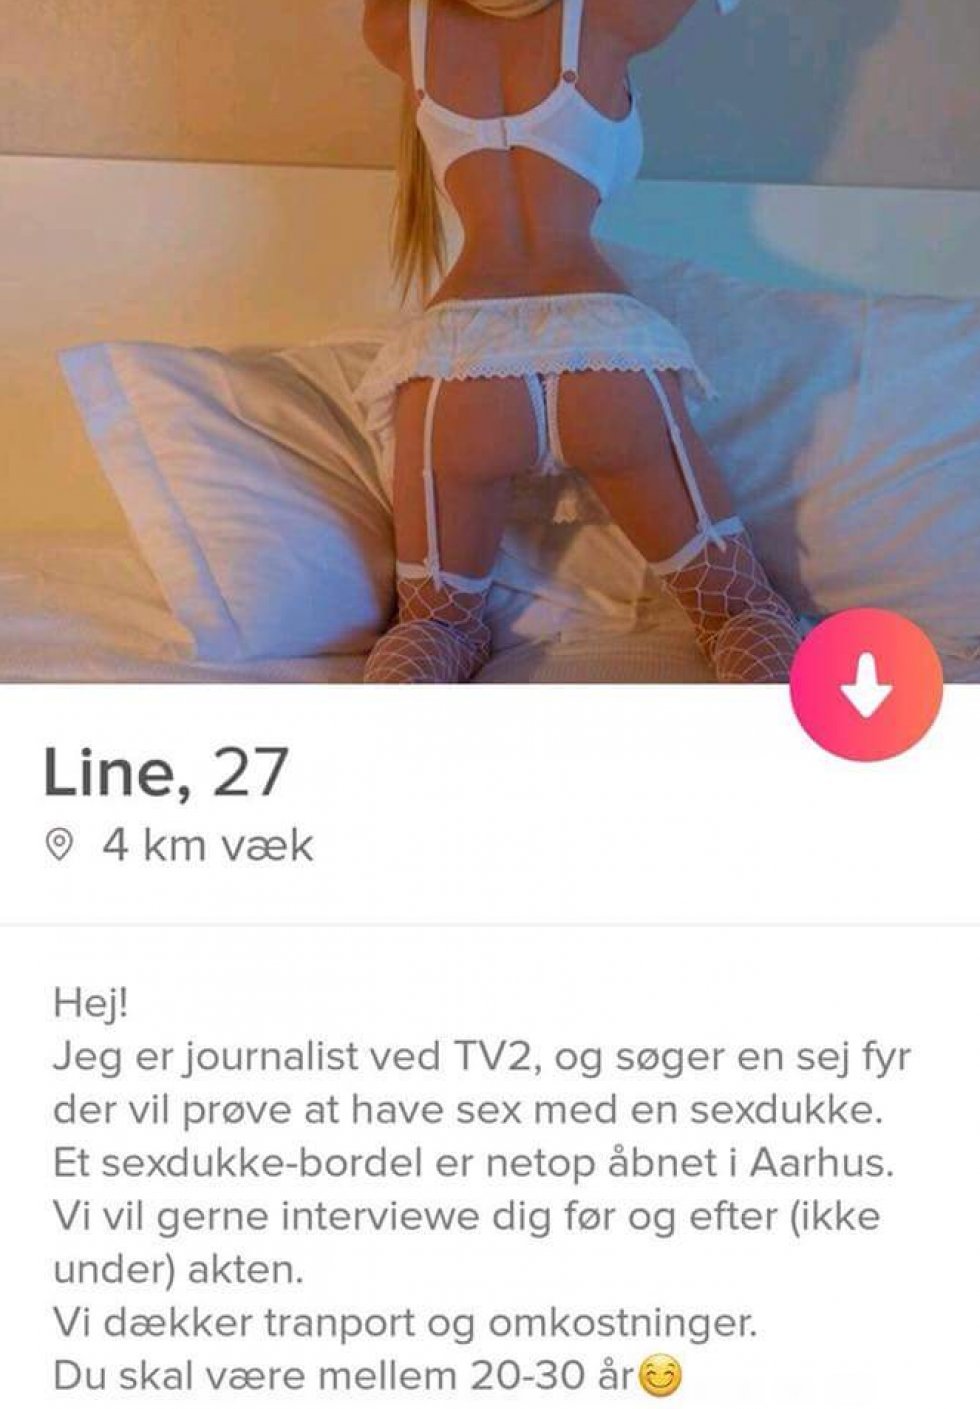 Tinder-match from hell.  - Aarhus har fået et sexdukkebordel... 